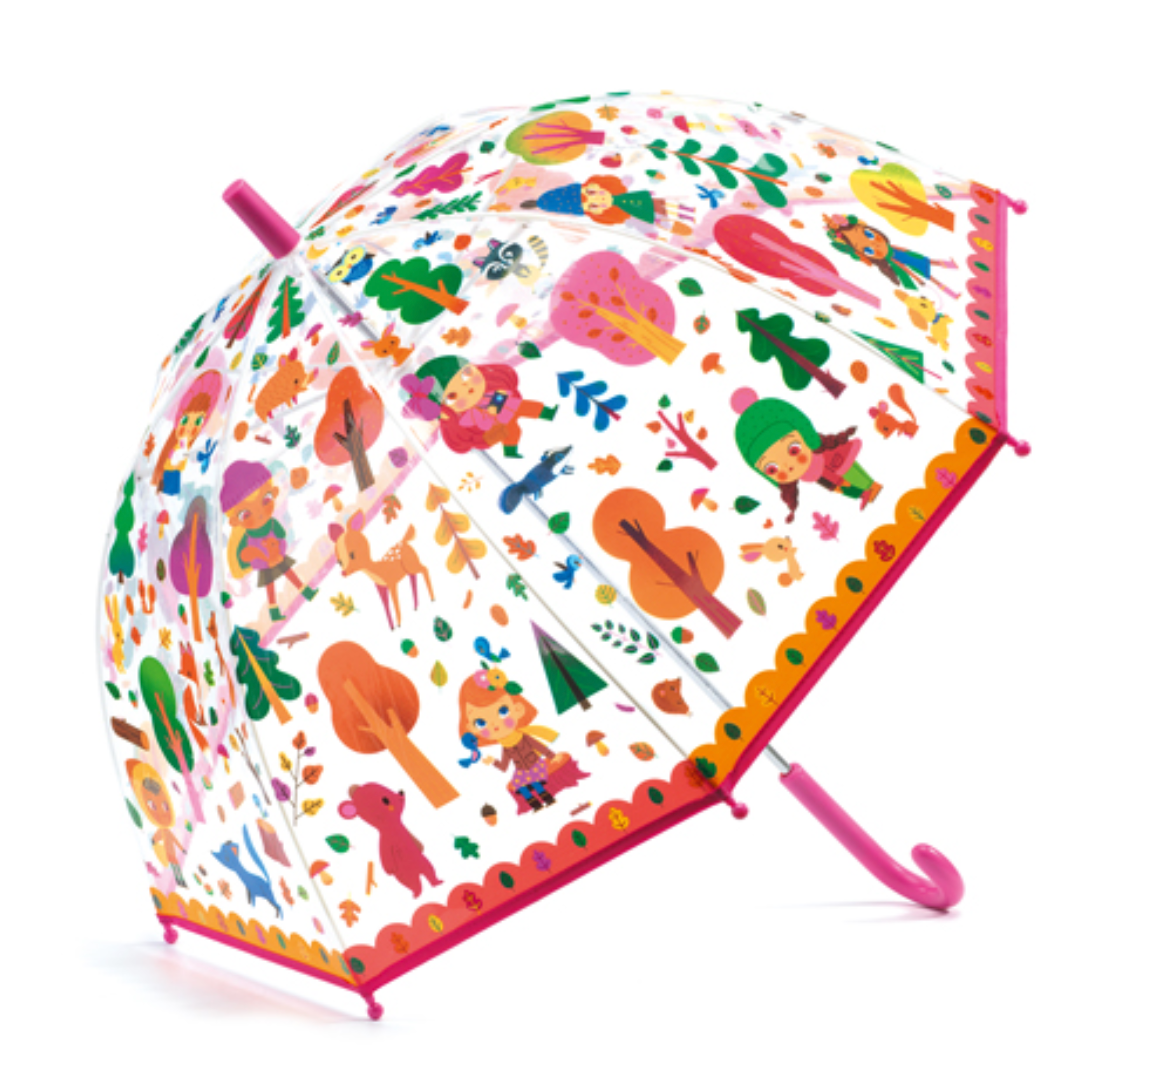 Forest Umbrella